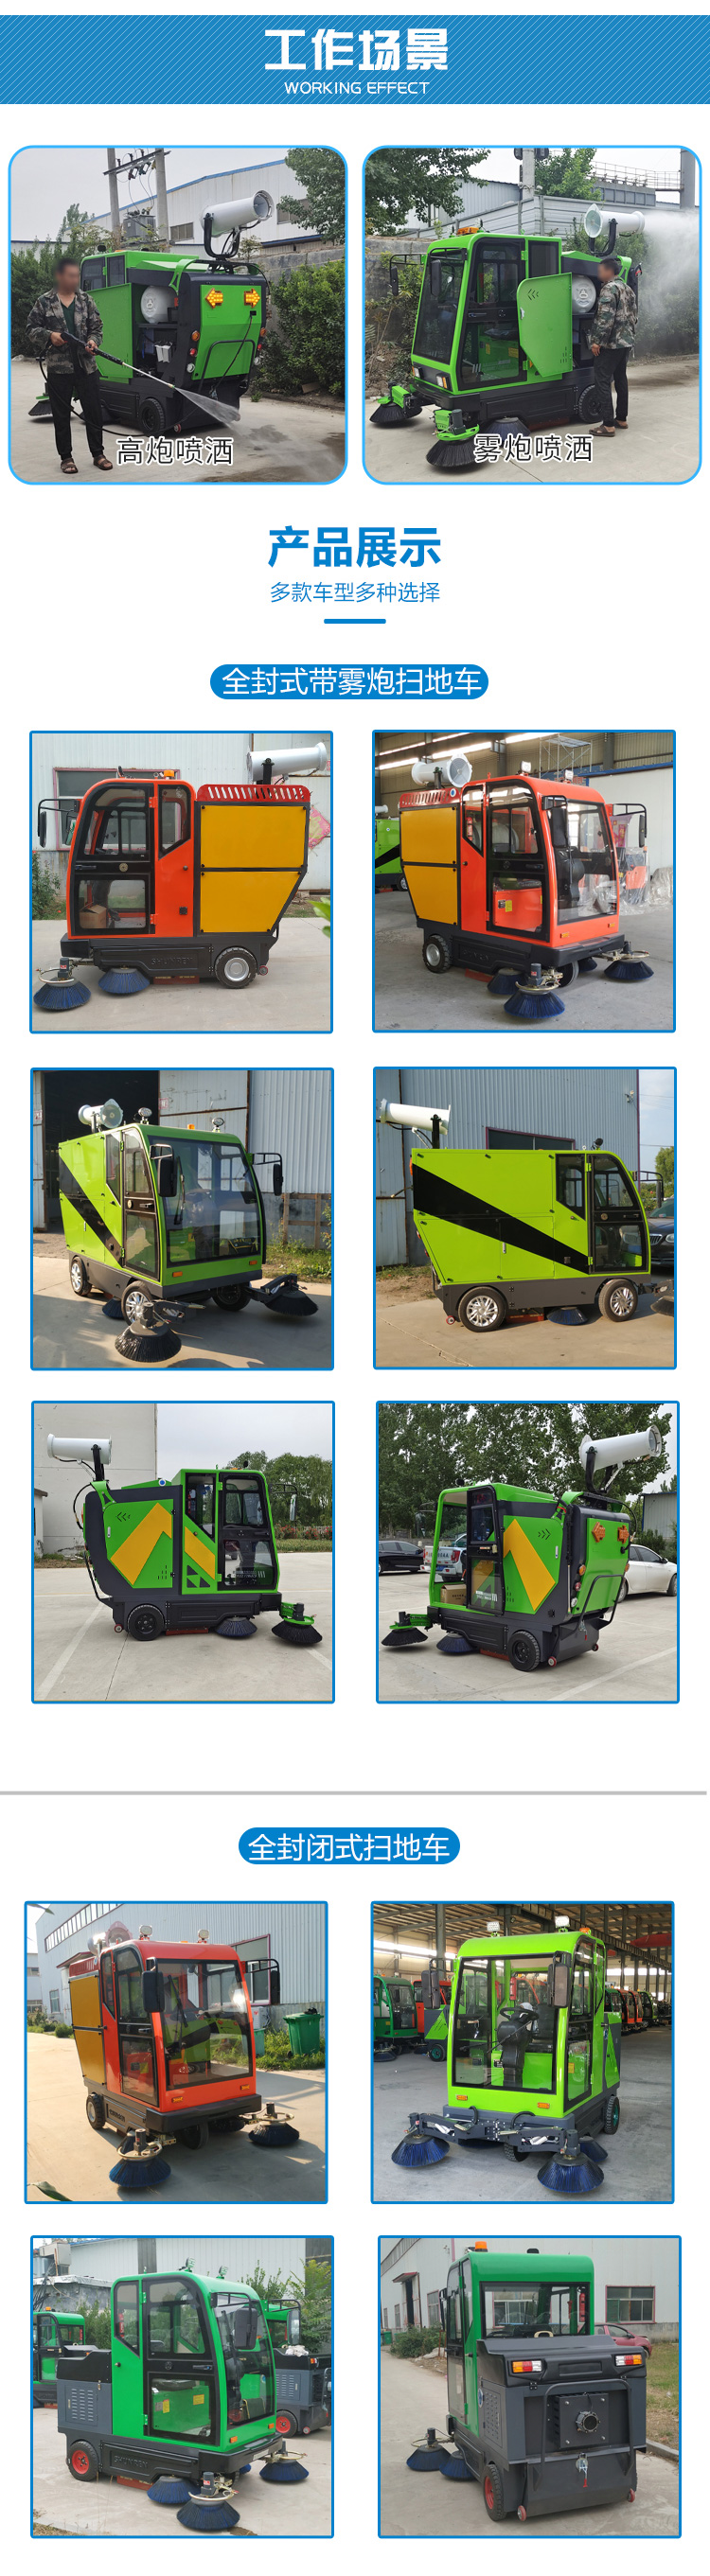 电动扫路车公园道路清洁 小型扫路车销售 新能源扫地车批发供应